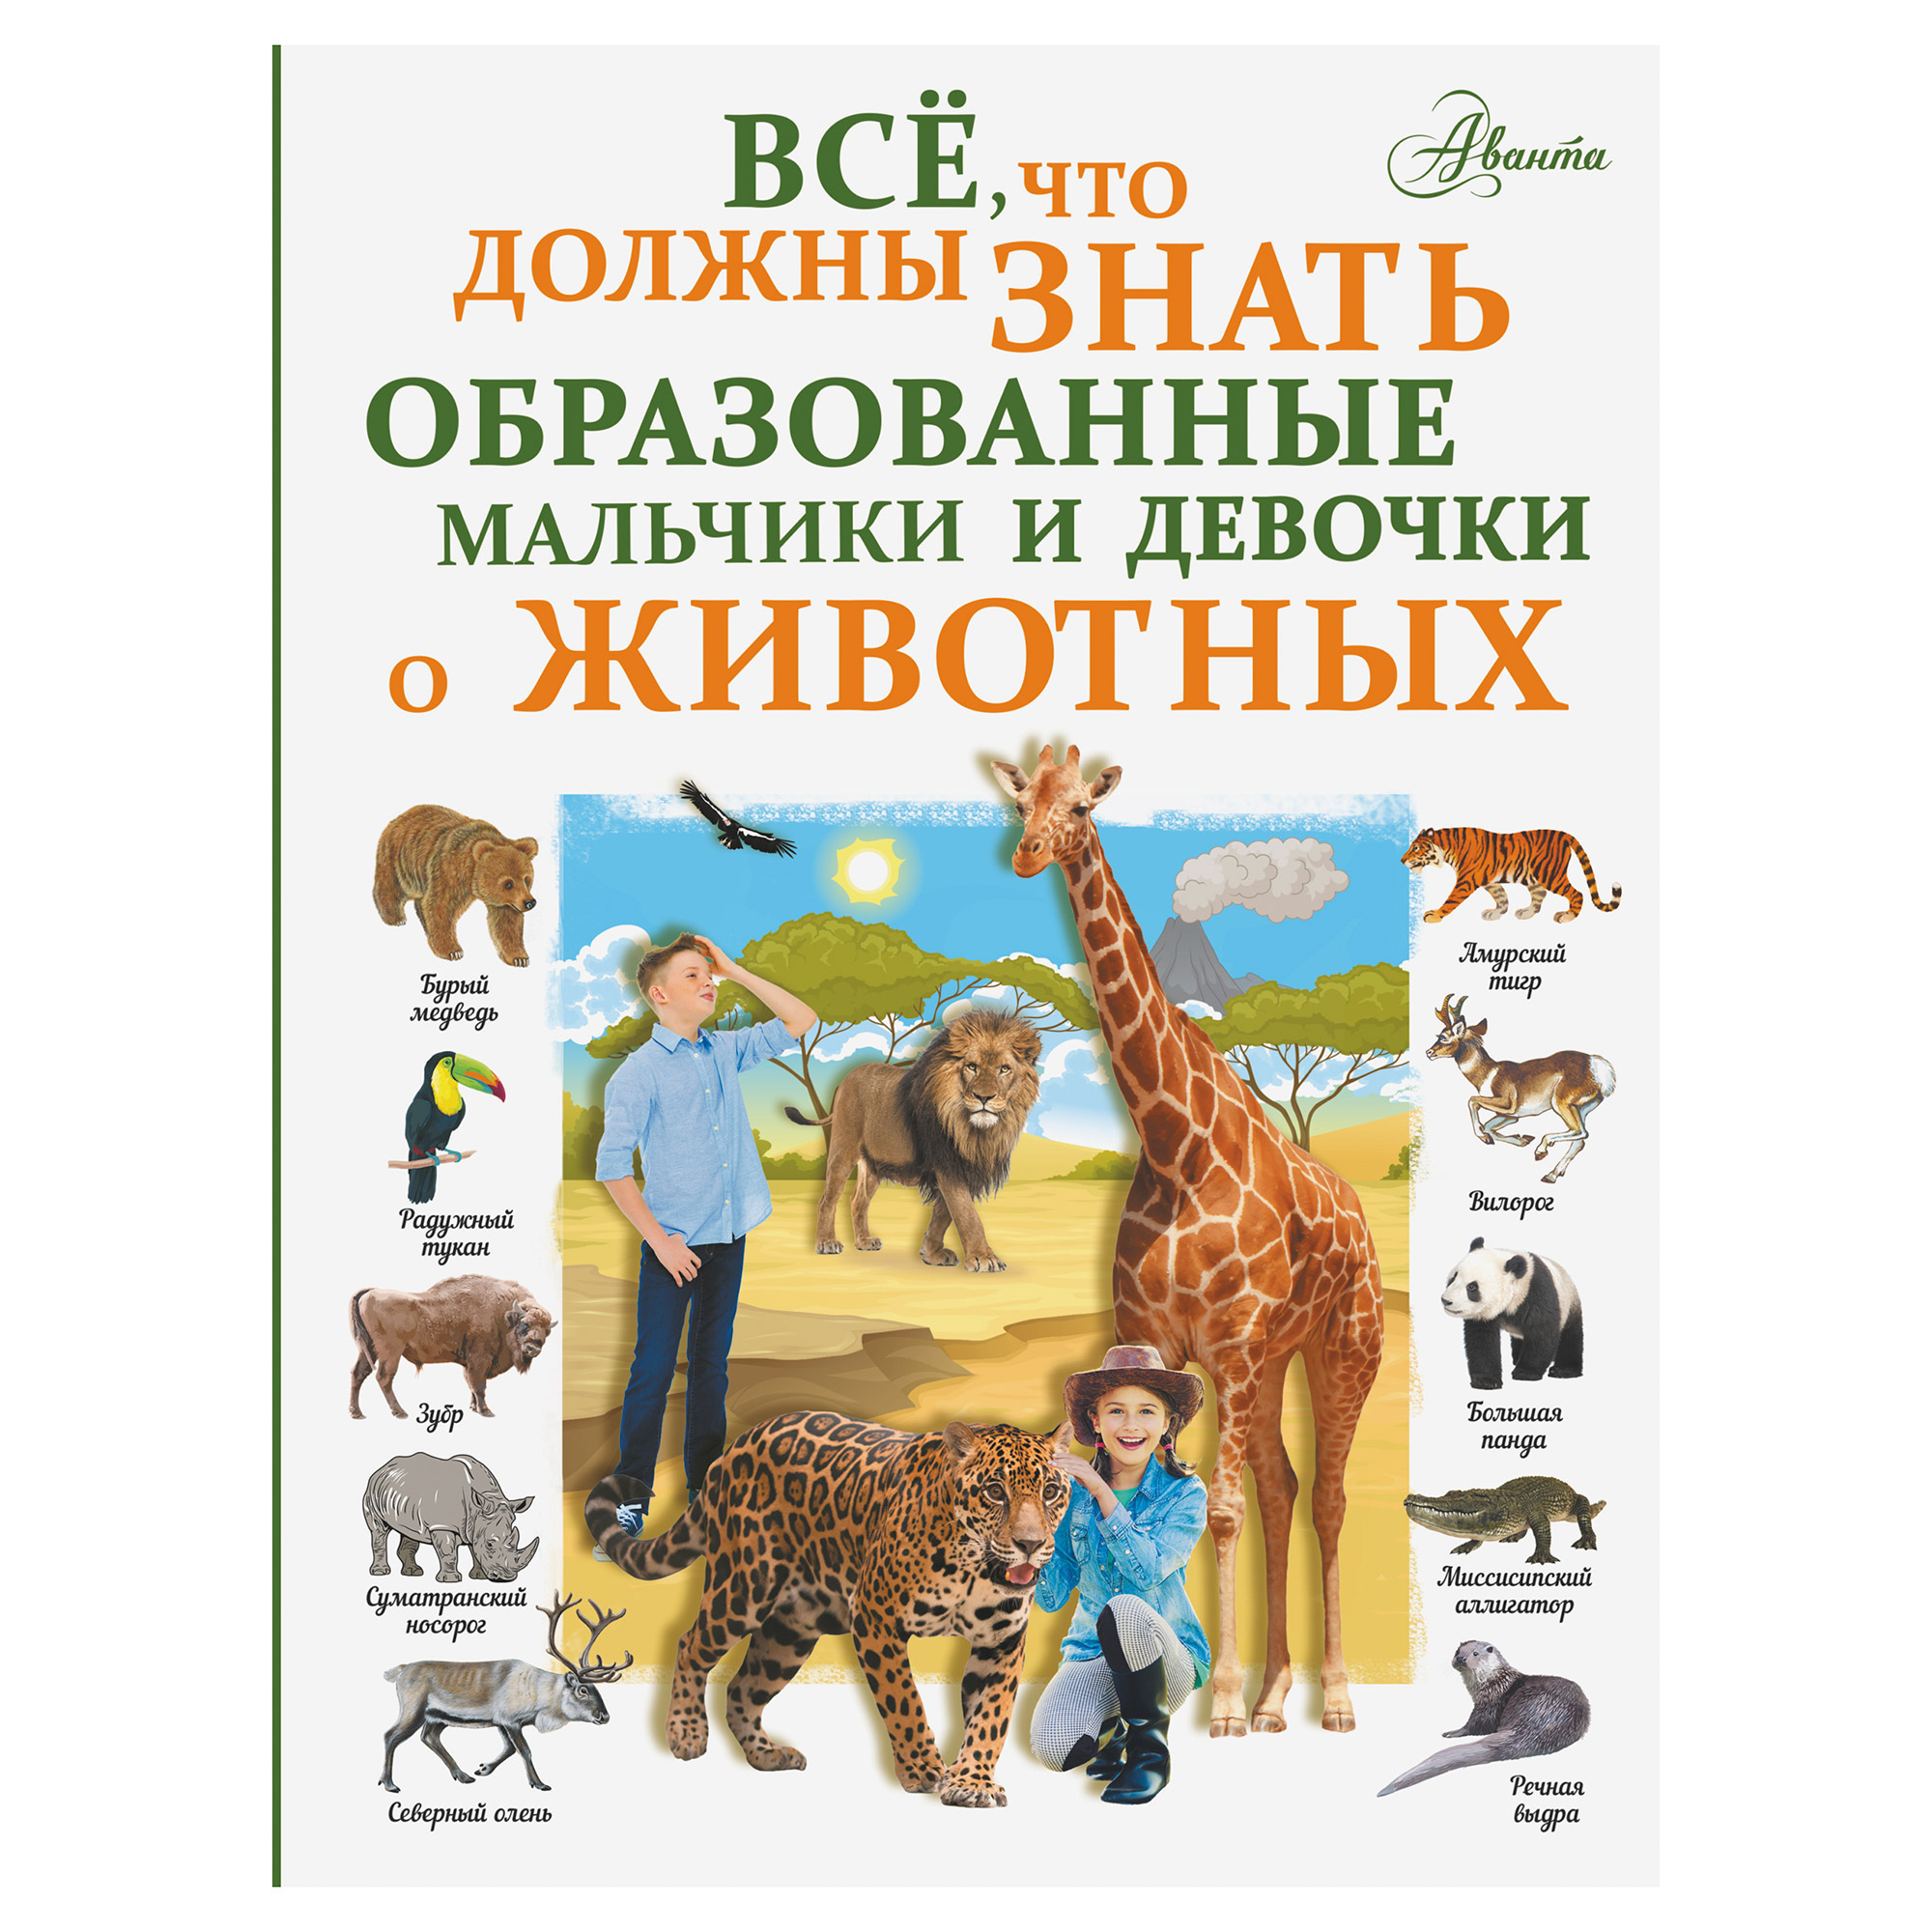 Книга АСТ Все, что должны знать образованные мальчики и девочки о животных